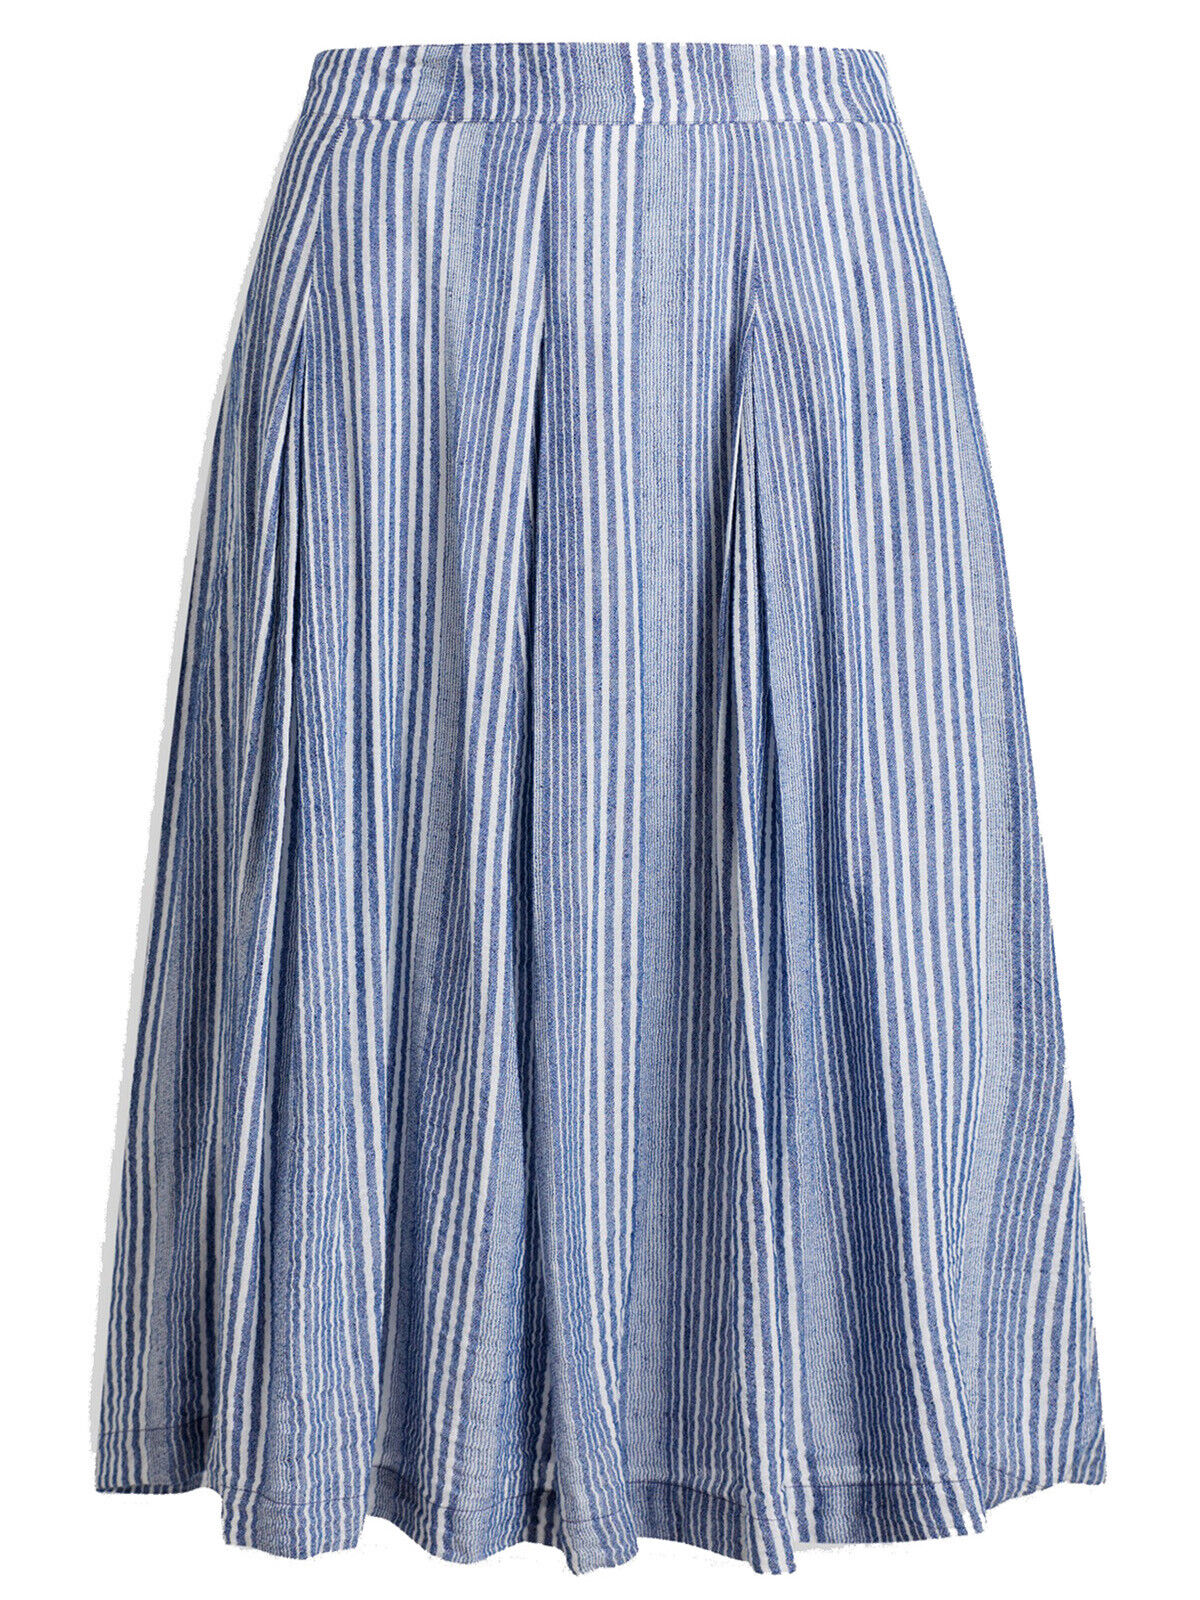 EX SEASALT Blue Linen Blend Grignette Voyage Sandbank Skirt Sizes 8 or 10 RRP£65